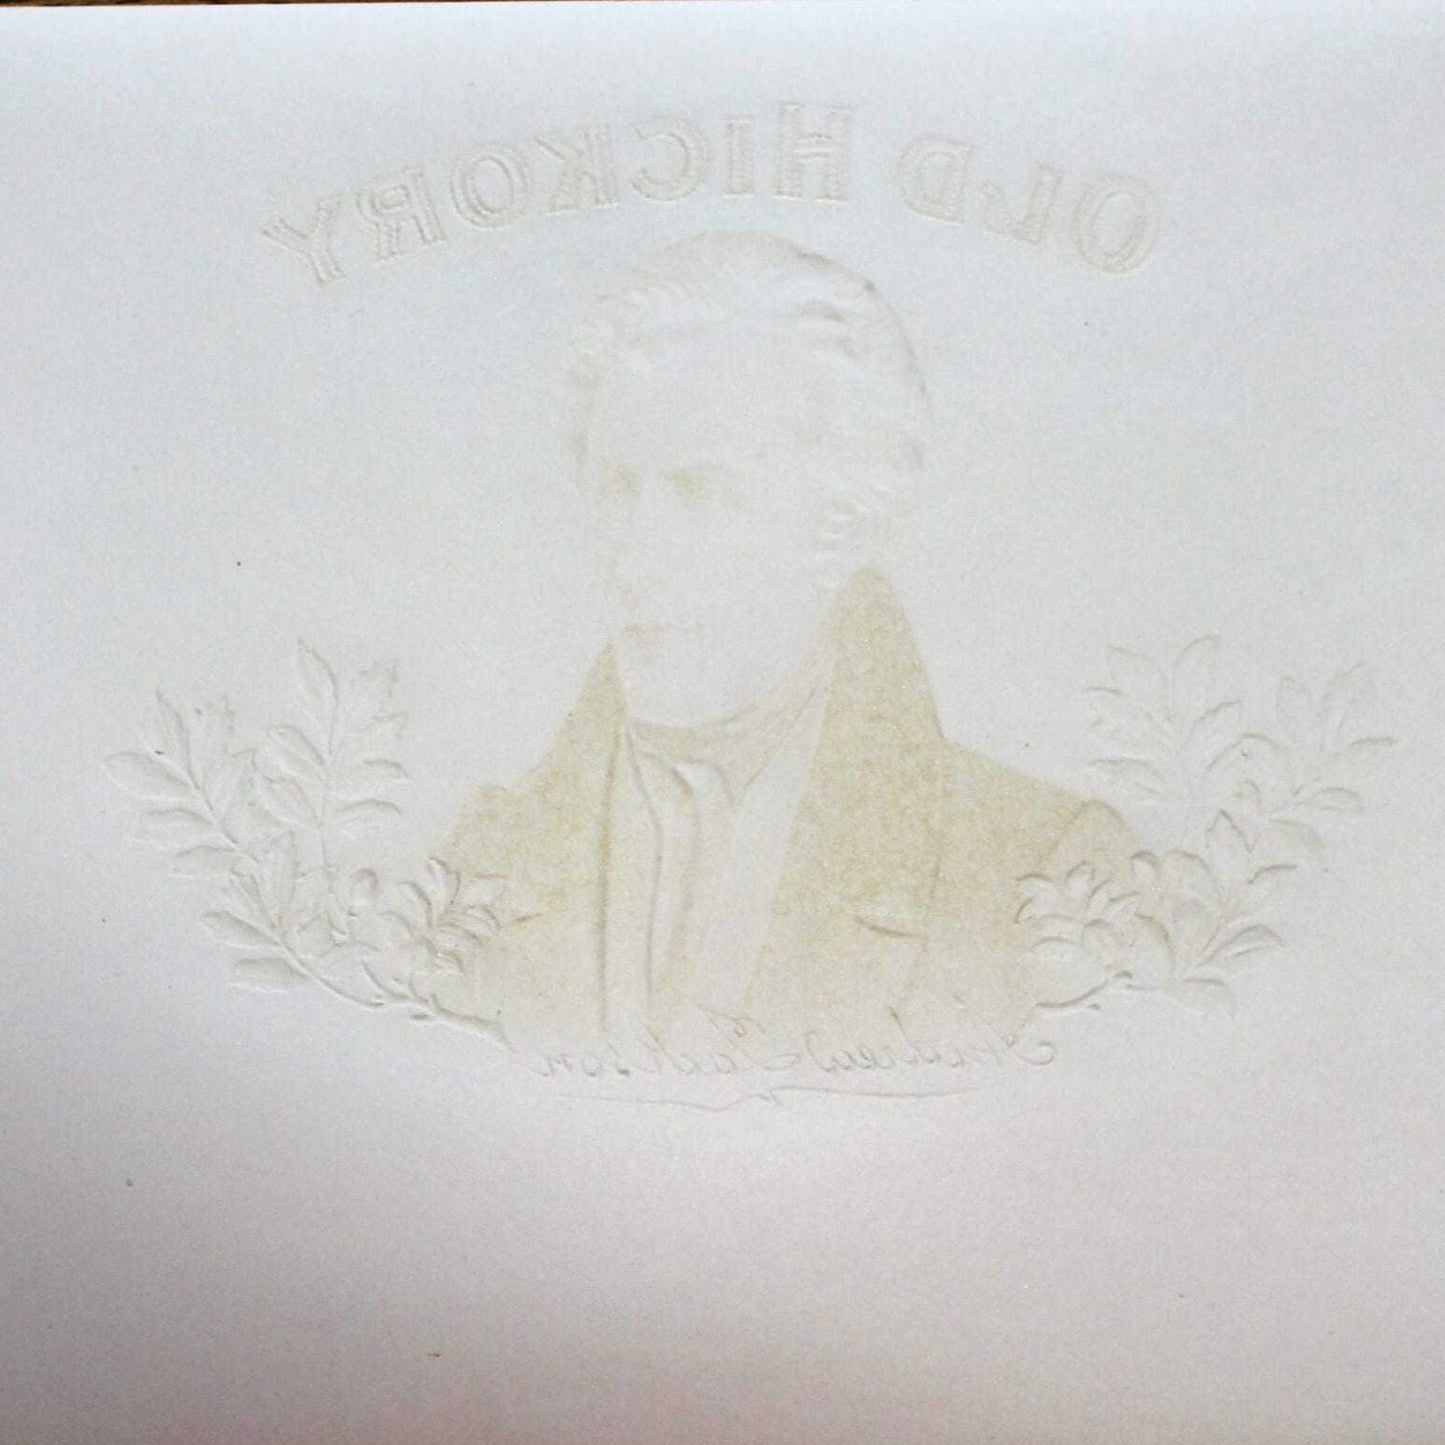 Cigar Box Label, Old Hickory, Original Lithograph, 1910's, NOS Antique